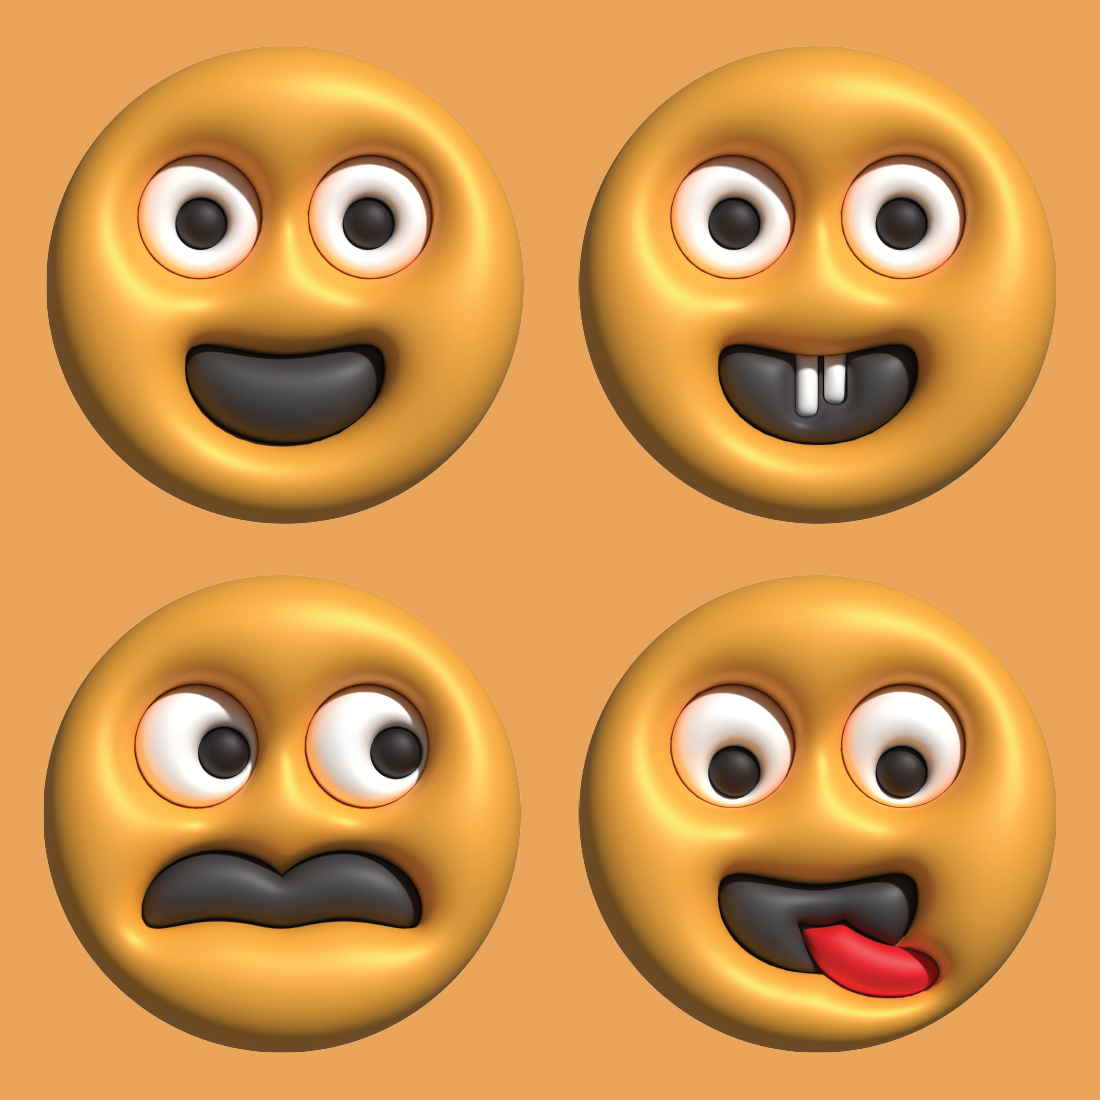 3D Emoticon Bundles cover image.